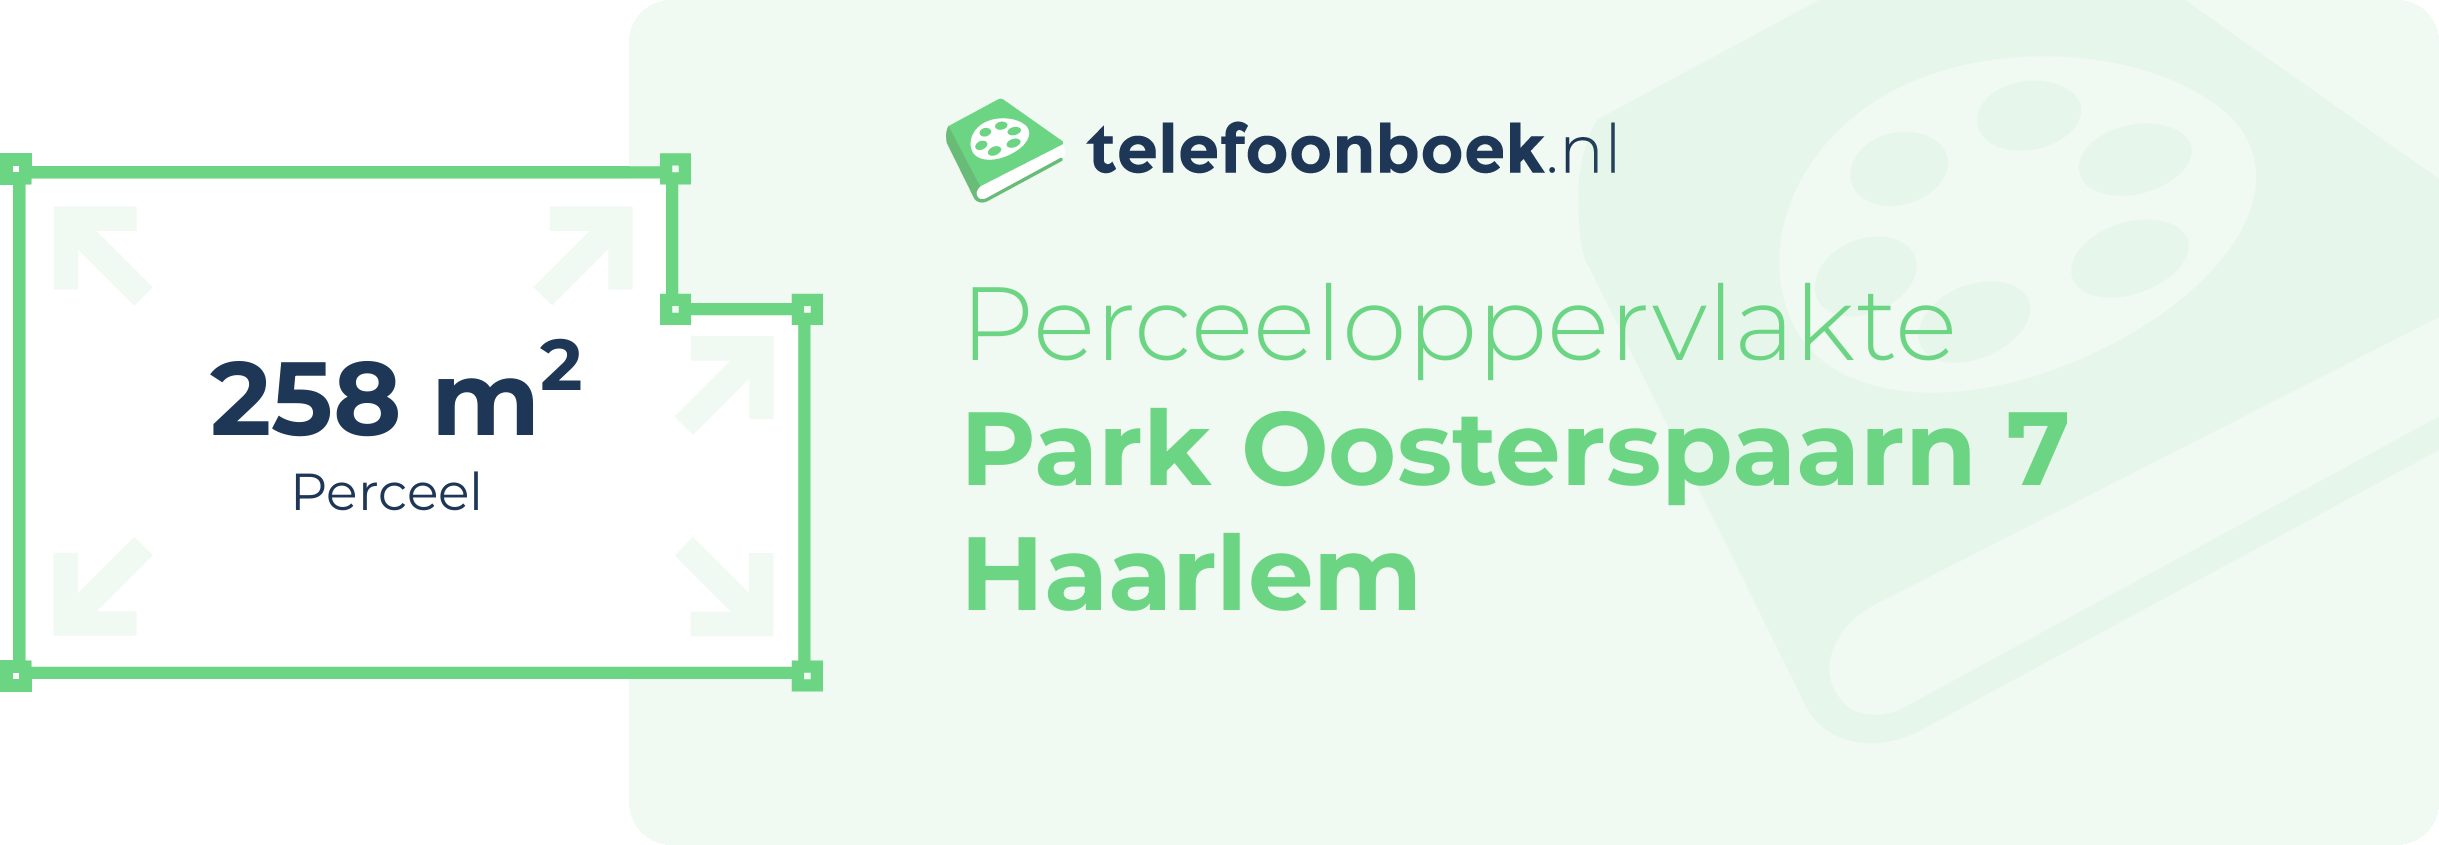 Perceeloppervlakte Park Oosterspaarn 7 Haarlem